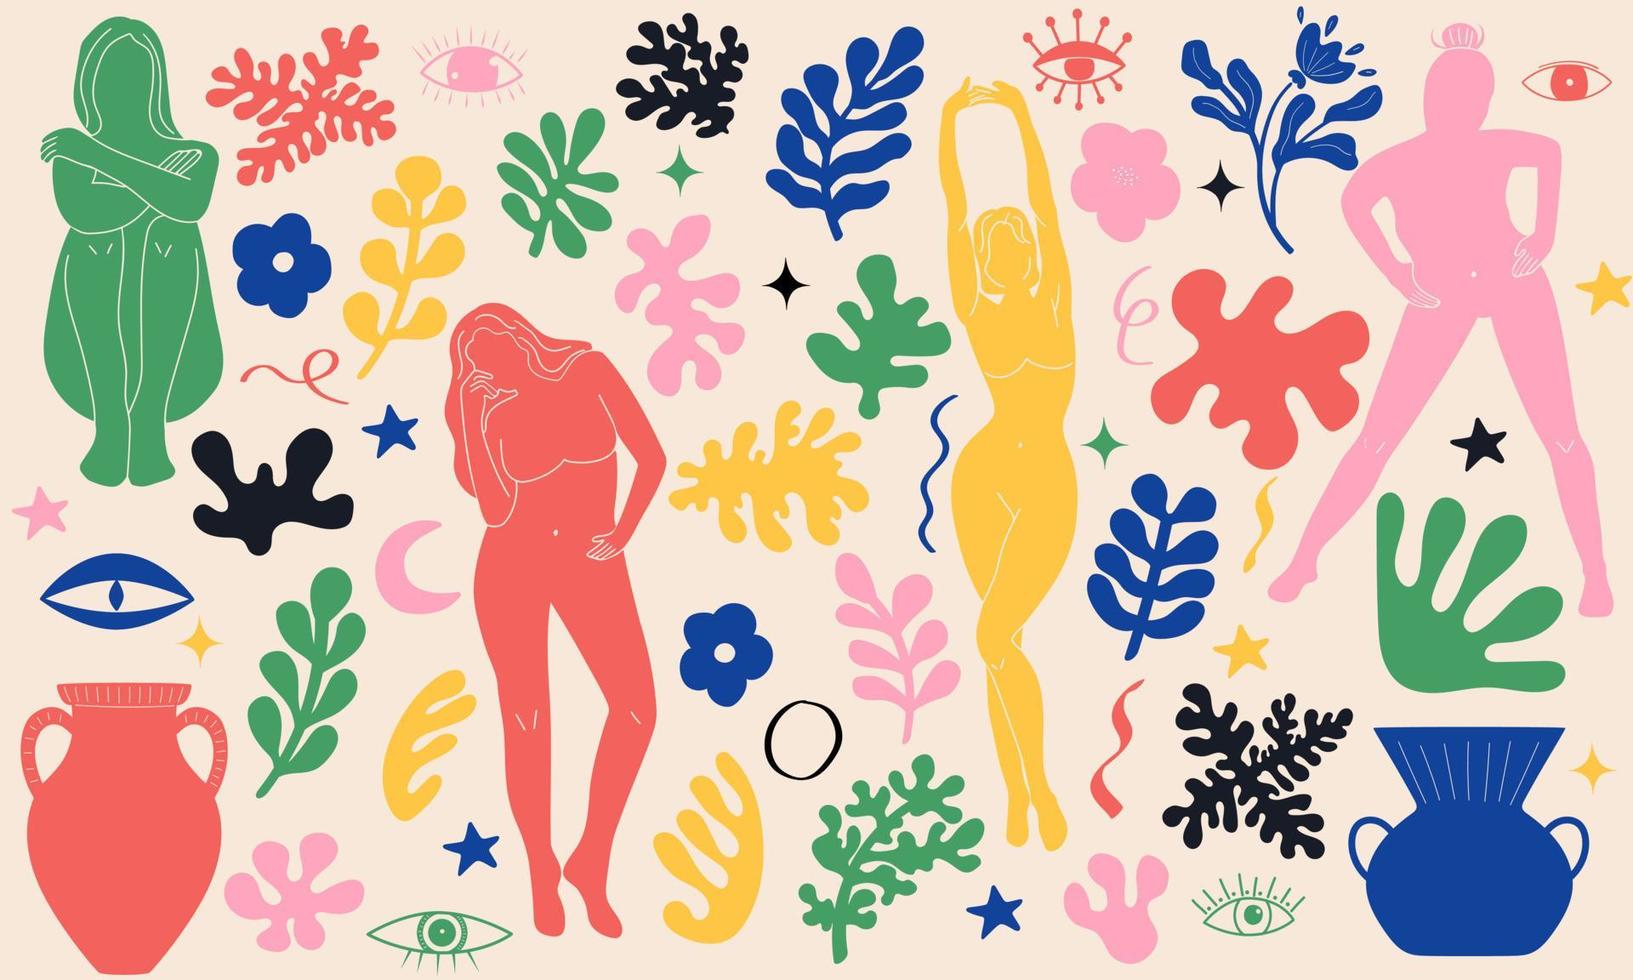 häftig klotter och abstrakt konst uppsättning. matisse slumpmässig organisk former och kvinna silhuetter i trendig retro 60s 70s stil. vektor